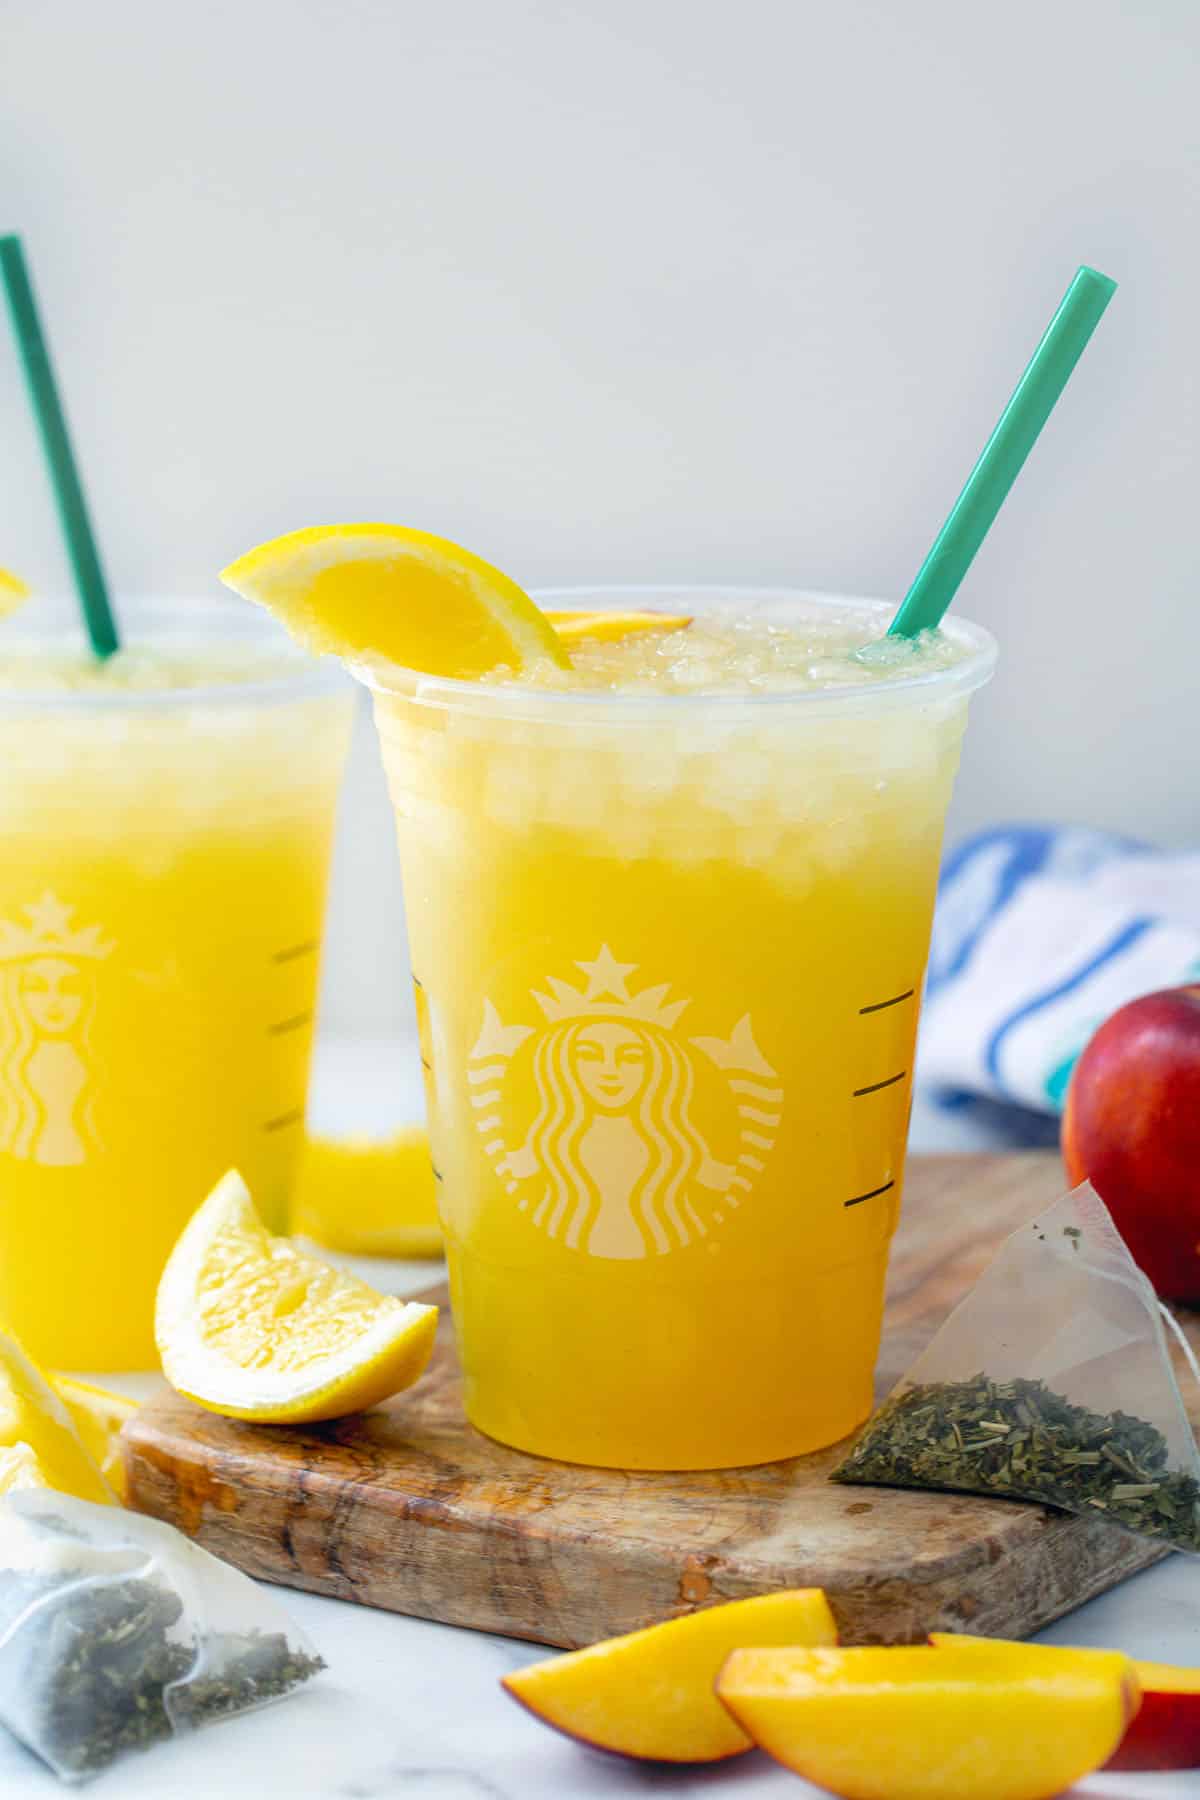 https://wearenotmartha.com/wp-content/uploads/iced-peach-green-tea-lemonade-6-4.jpg